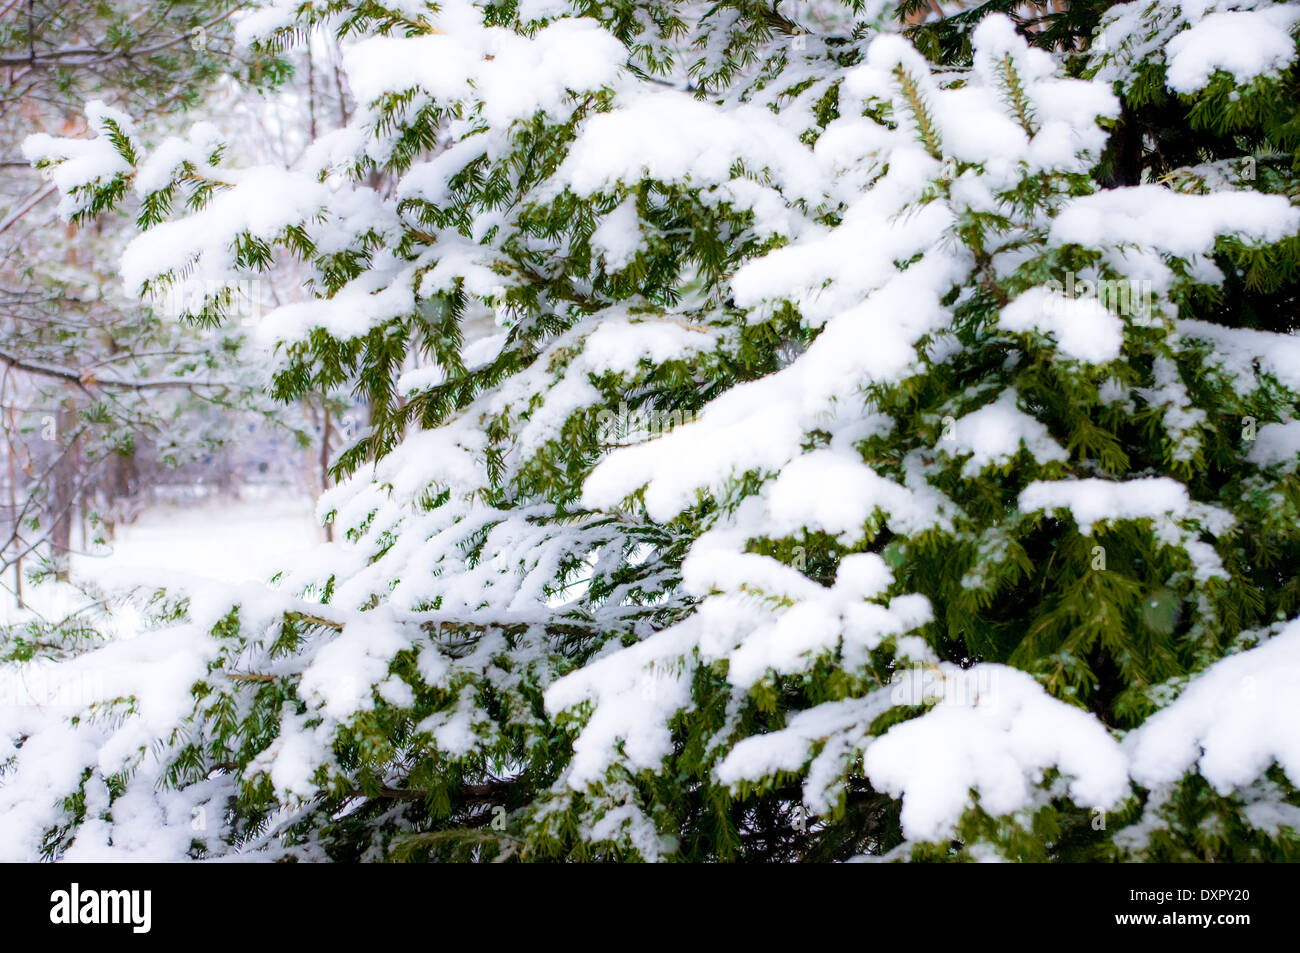 Nadelbaum, Fichte, Kiefer, Tanne, Weihnachtsbaum Äste mit Schnee bedeckt Stockfoto